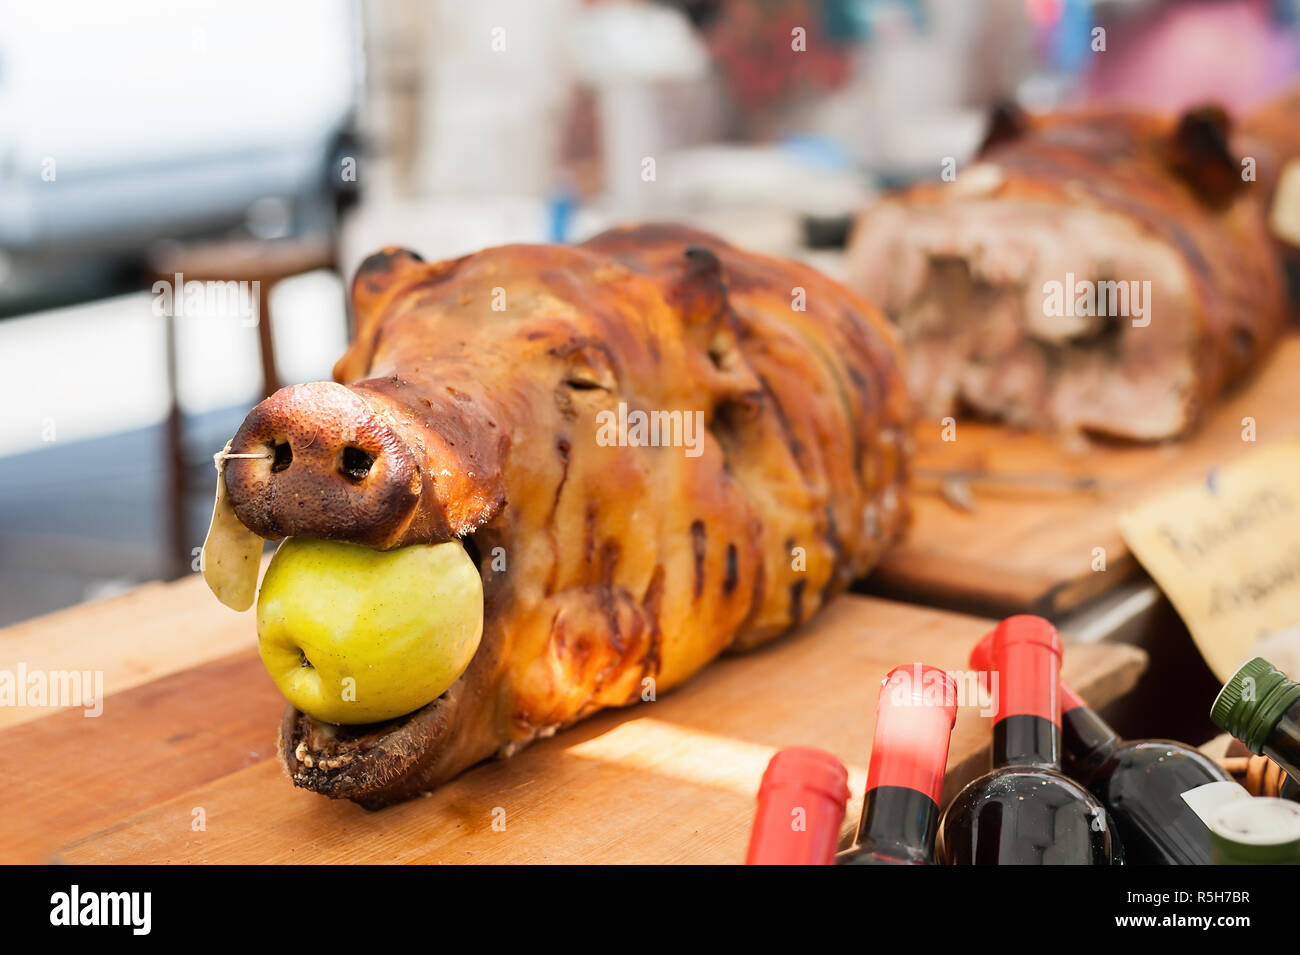 Schweinefleisch gebraten mit Apfel im Mund. Typische porchetta Italiana  Stockfotografie - Alamy